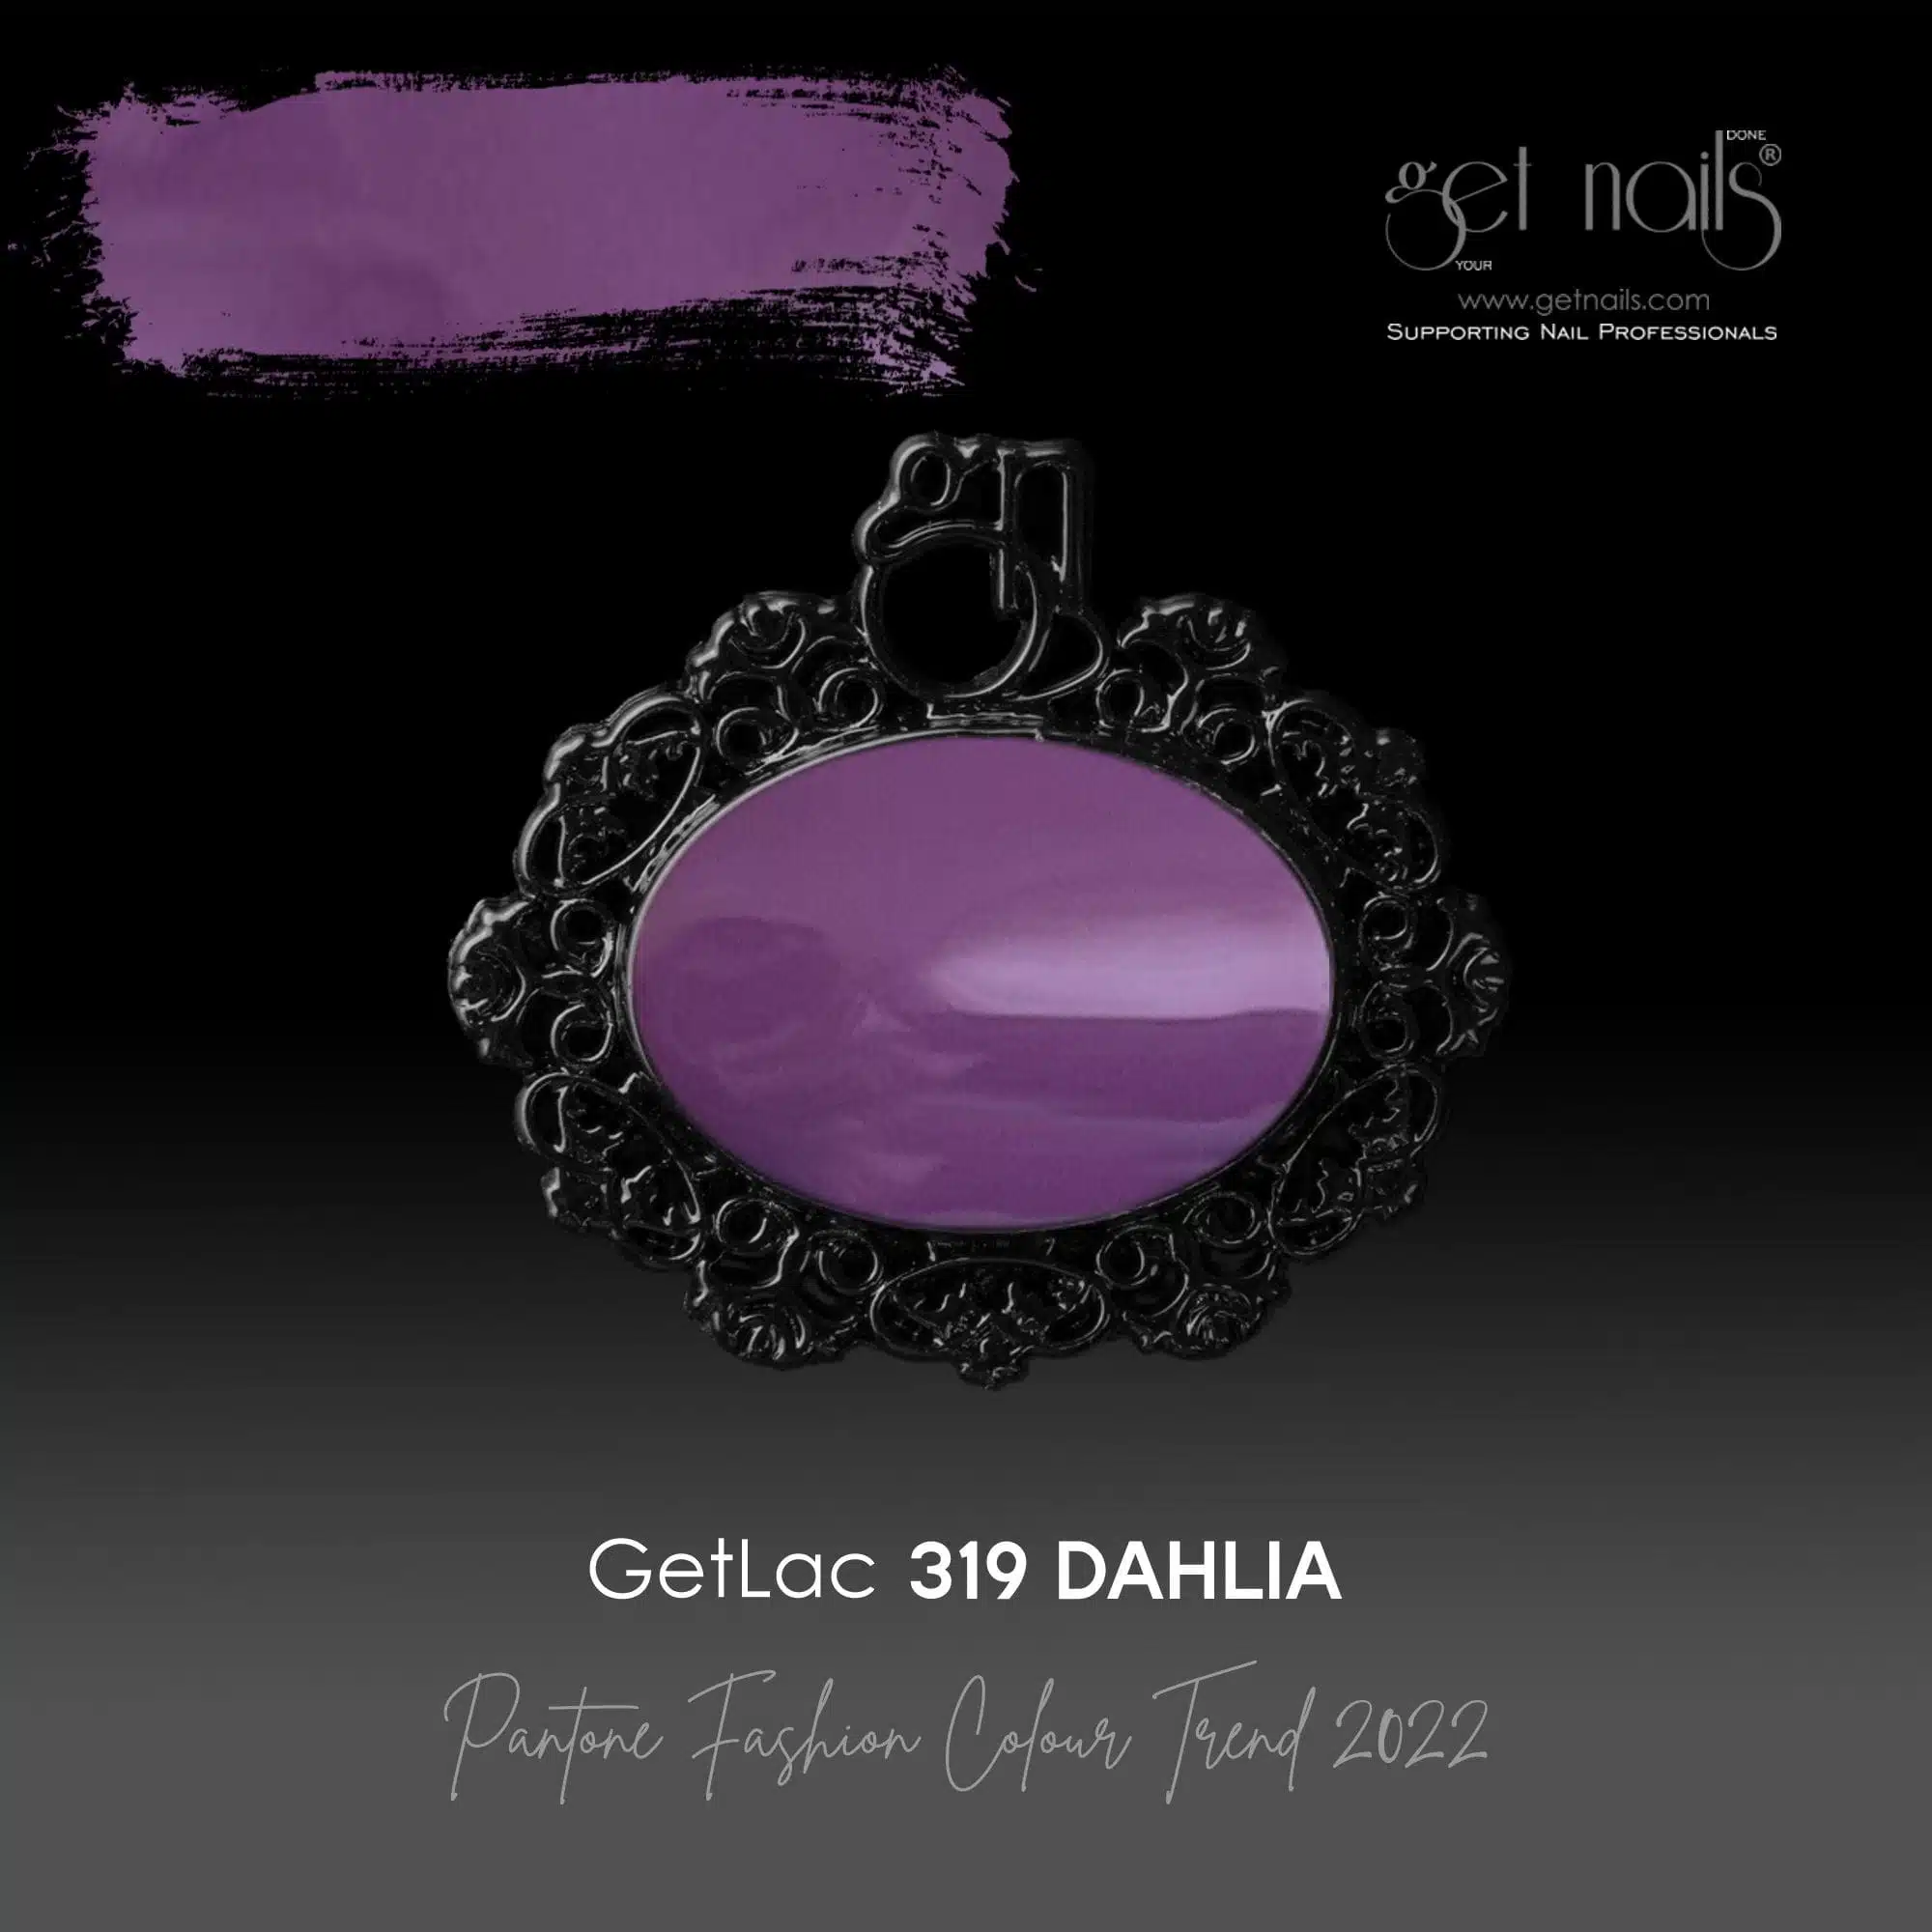 Get Nails Austria - GetLac 319 Dahlia 15g